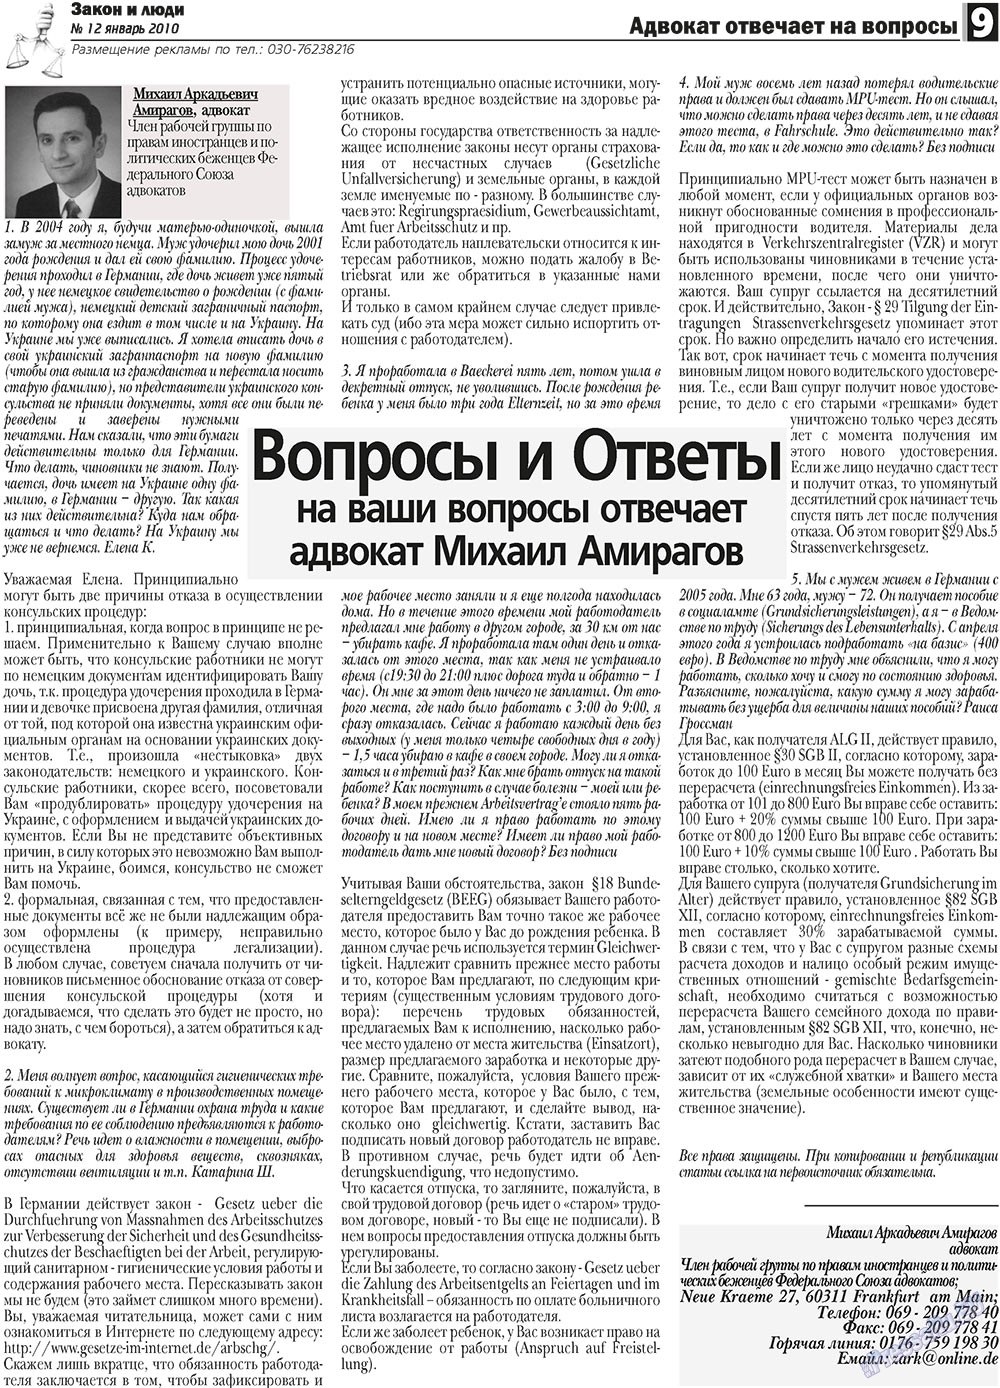 Закон и люди, газета. 2011 №1 стр.9